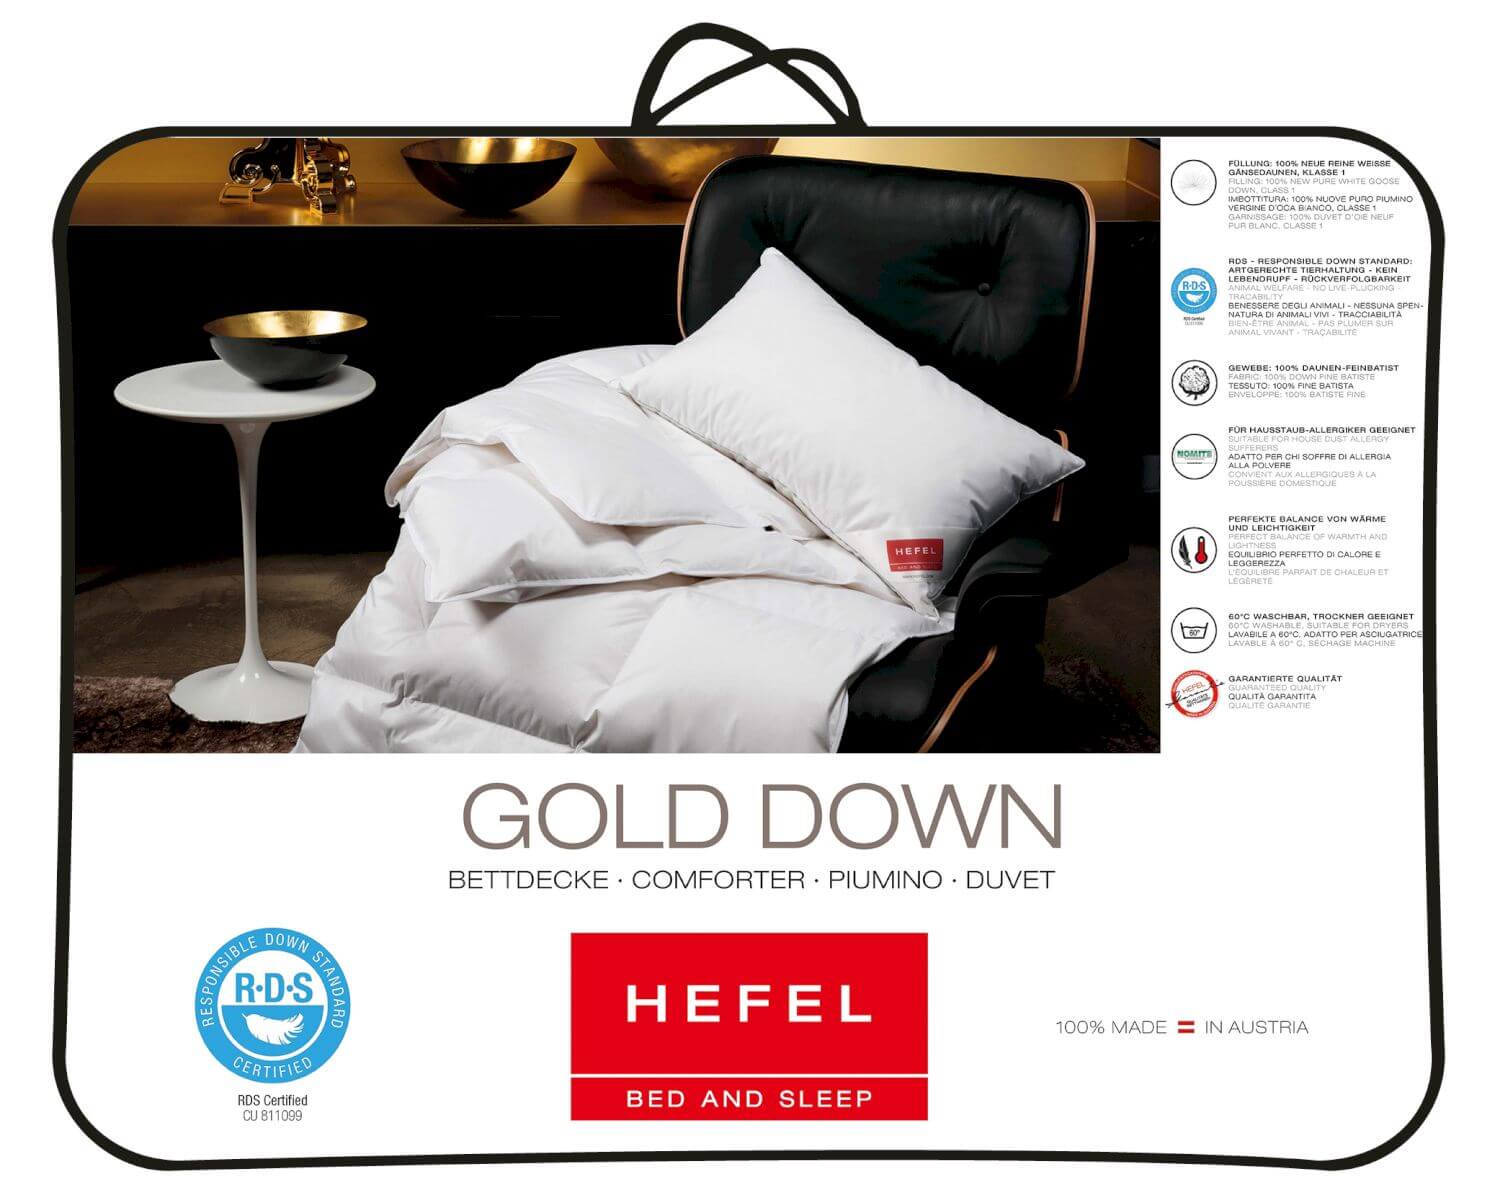 Hefel »Gold Down« Daunendecke erhältlich bei • slewo.com